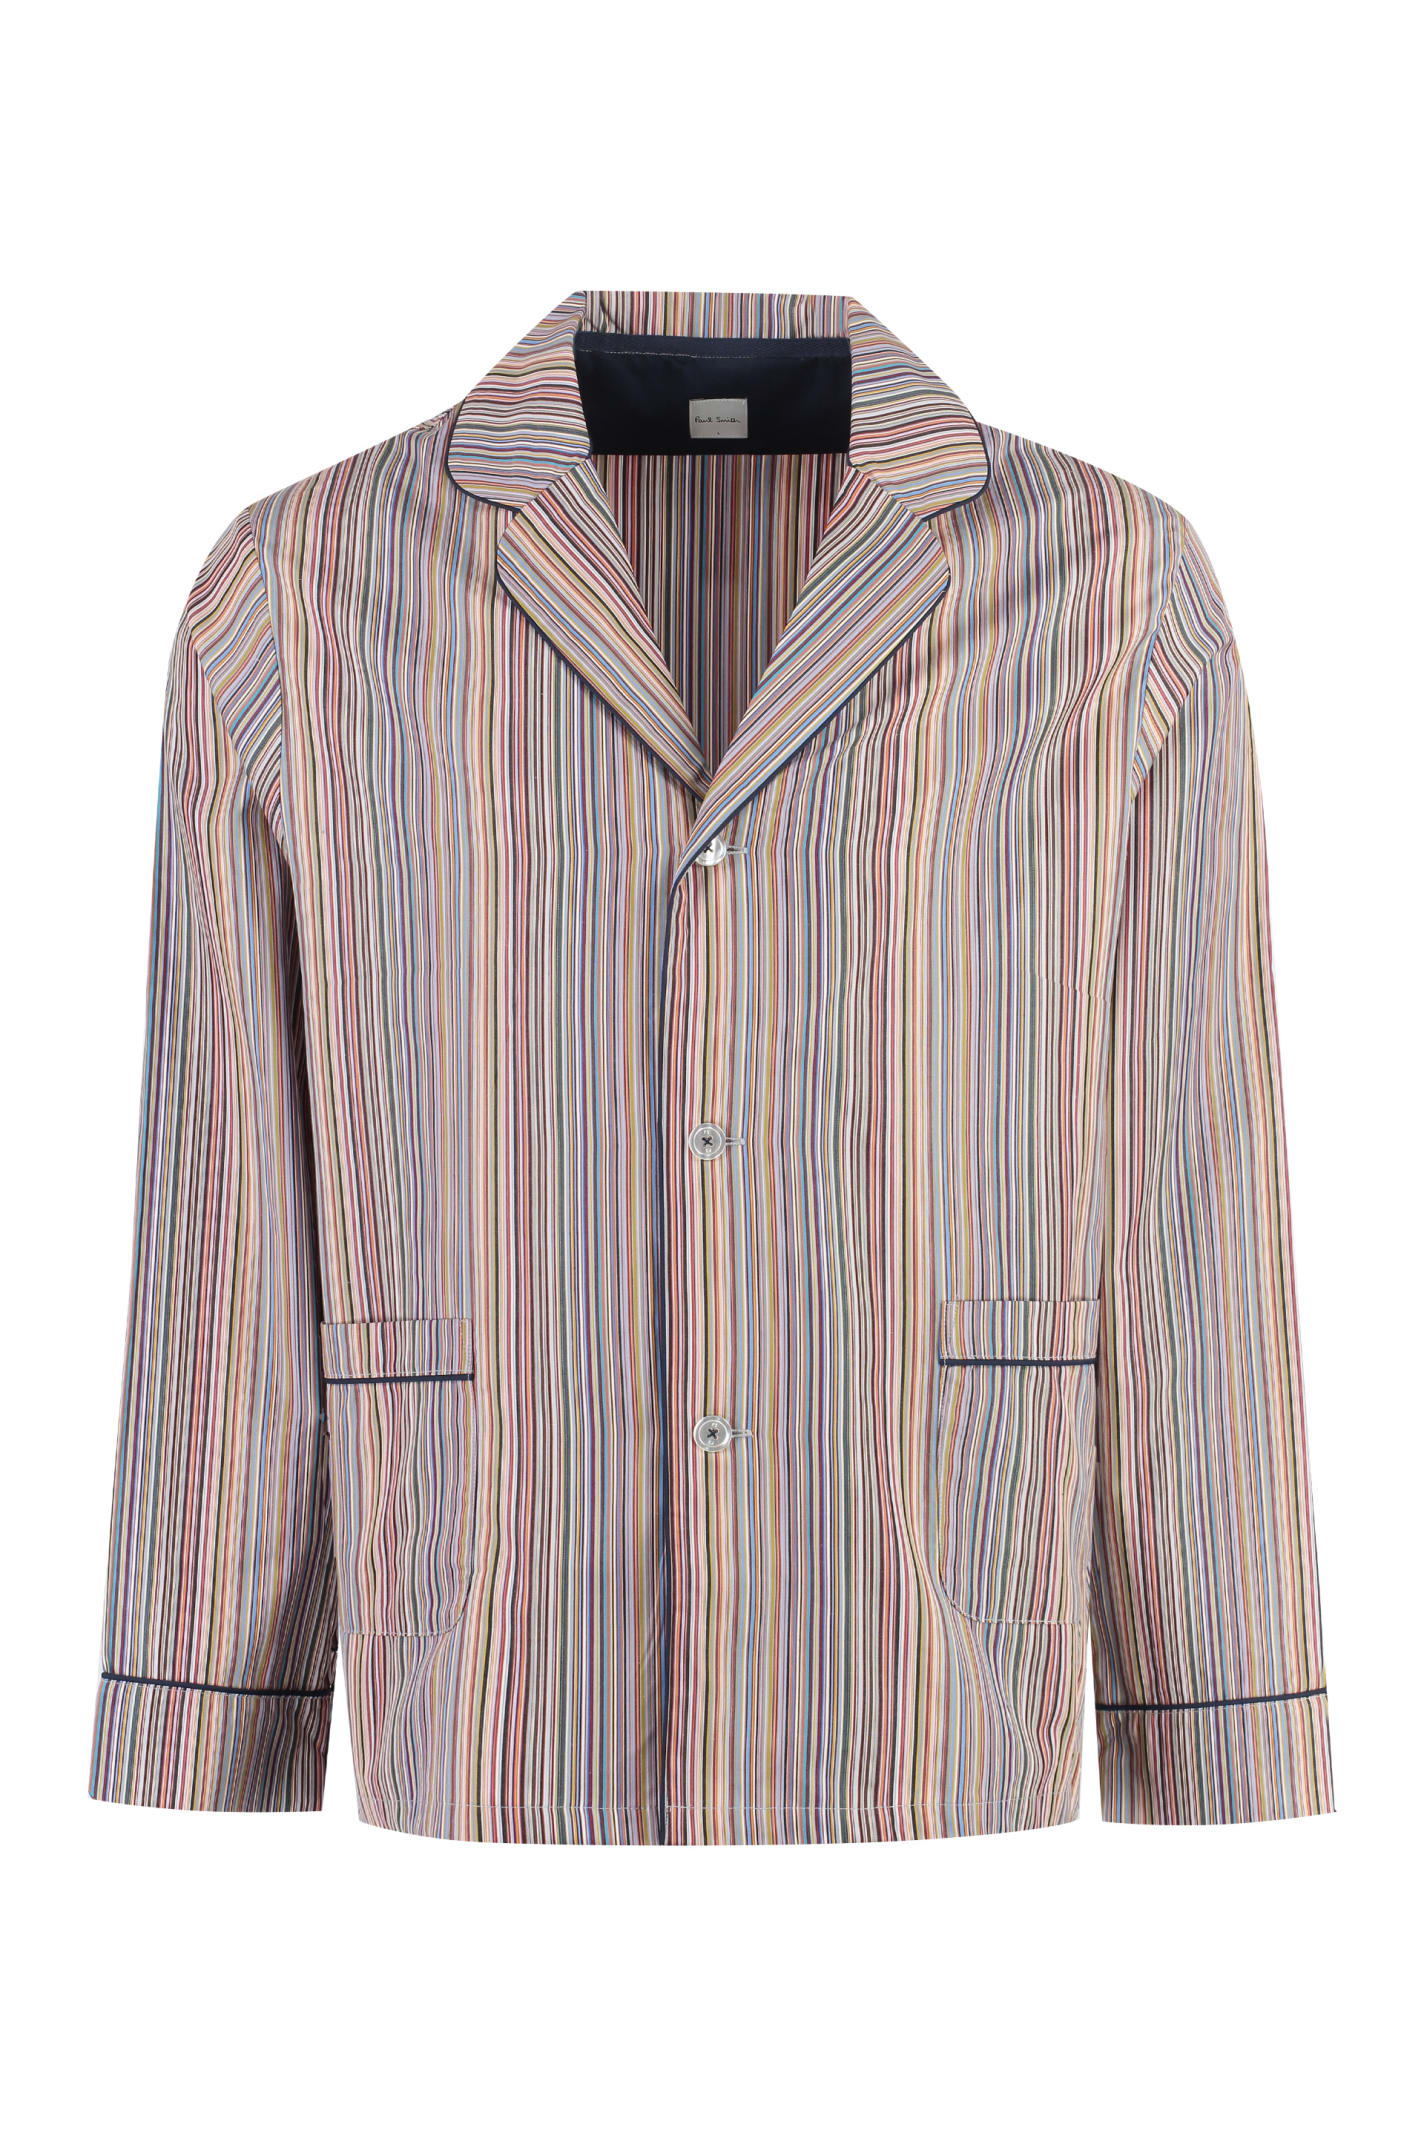 Ps By Paul Smith Striped Cotton Pyjamas Pajama In Multi Coloured